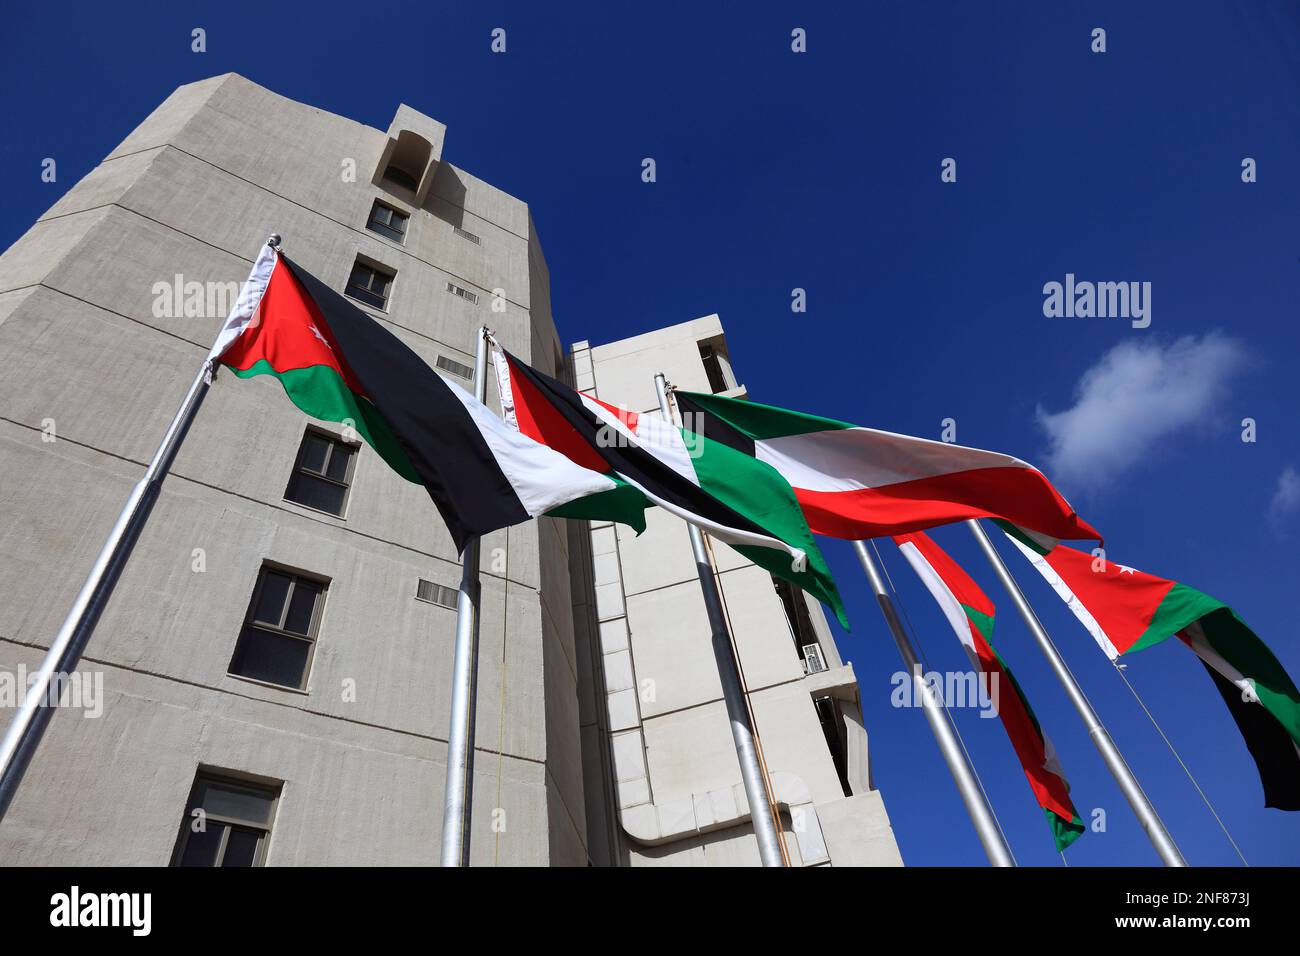 The Housing Bank, Fahnen, Amman, Jordanien  /  The Housing Bank, flags, Amman, Jordan Stock Photo